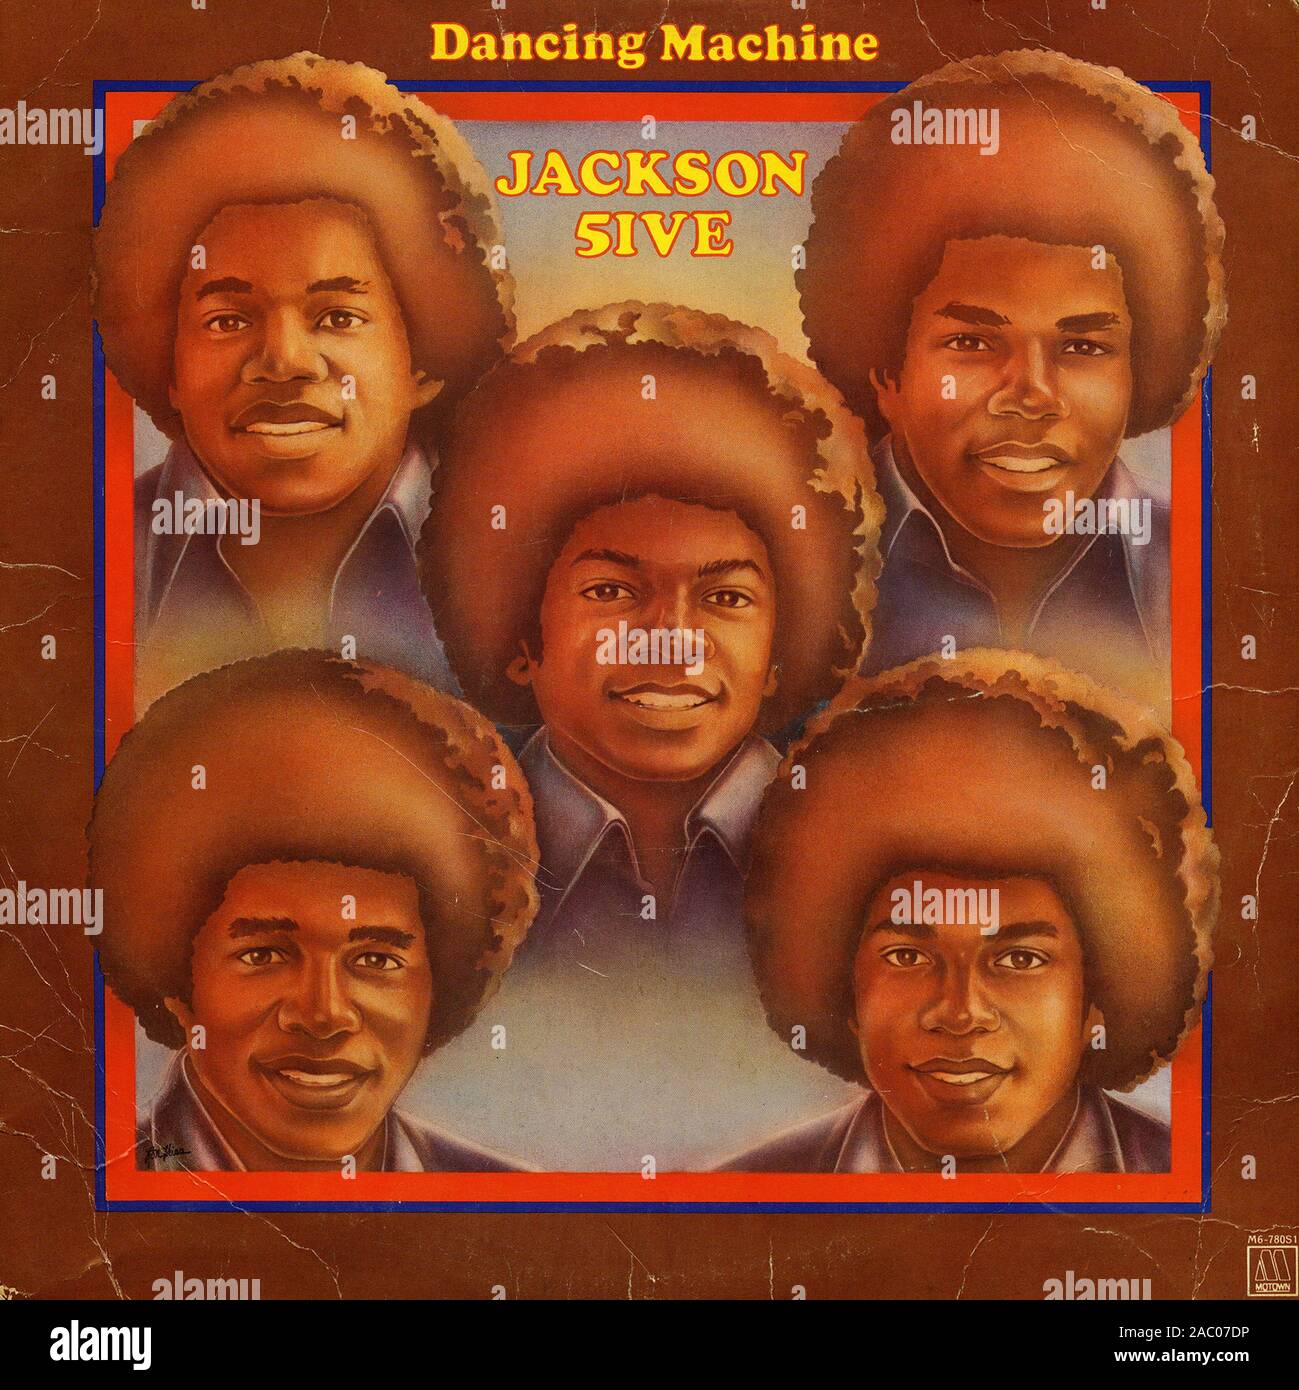 Dancing Machine Jackson 5 - Couverture de l'album vinyle vintage Banque D'Images